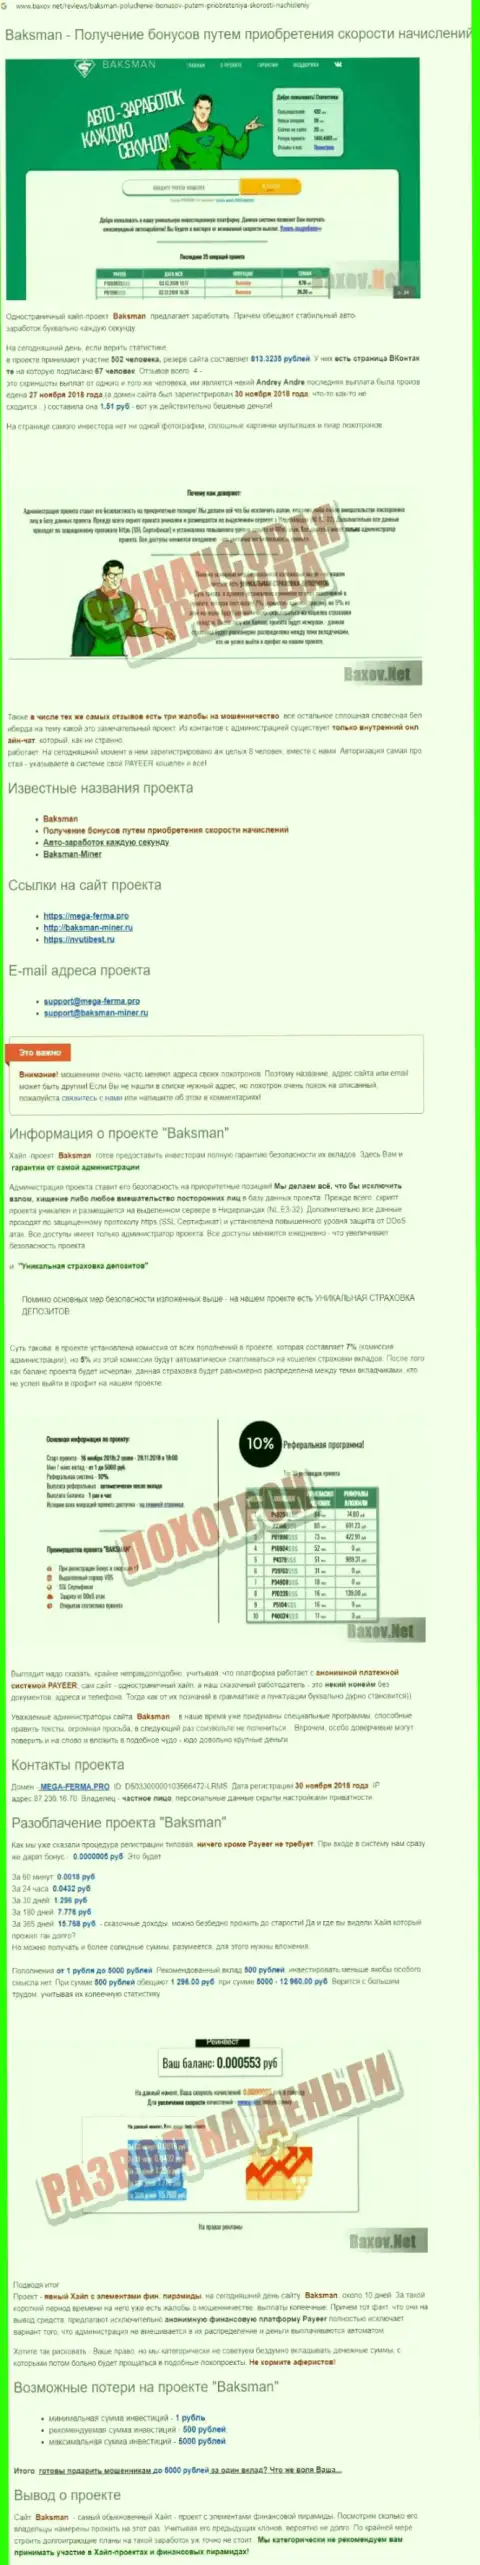 Предложения взаимодействия от BaksMan, вся правдивая информация о указанной компании (обзор)